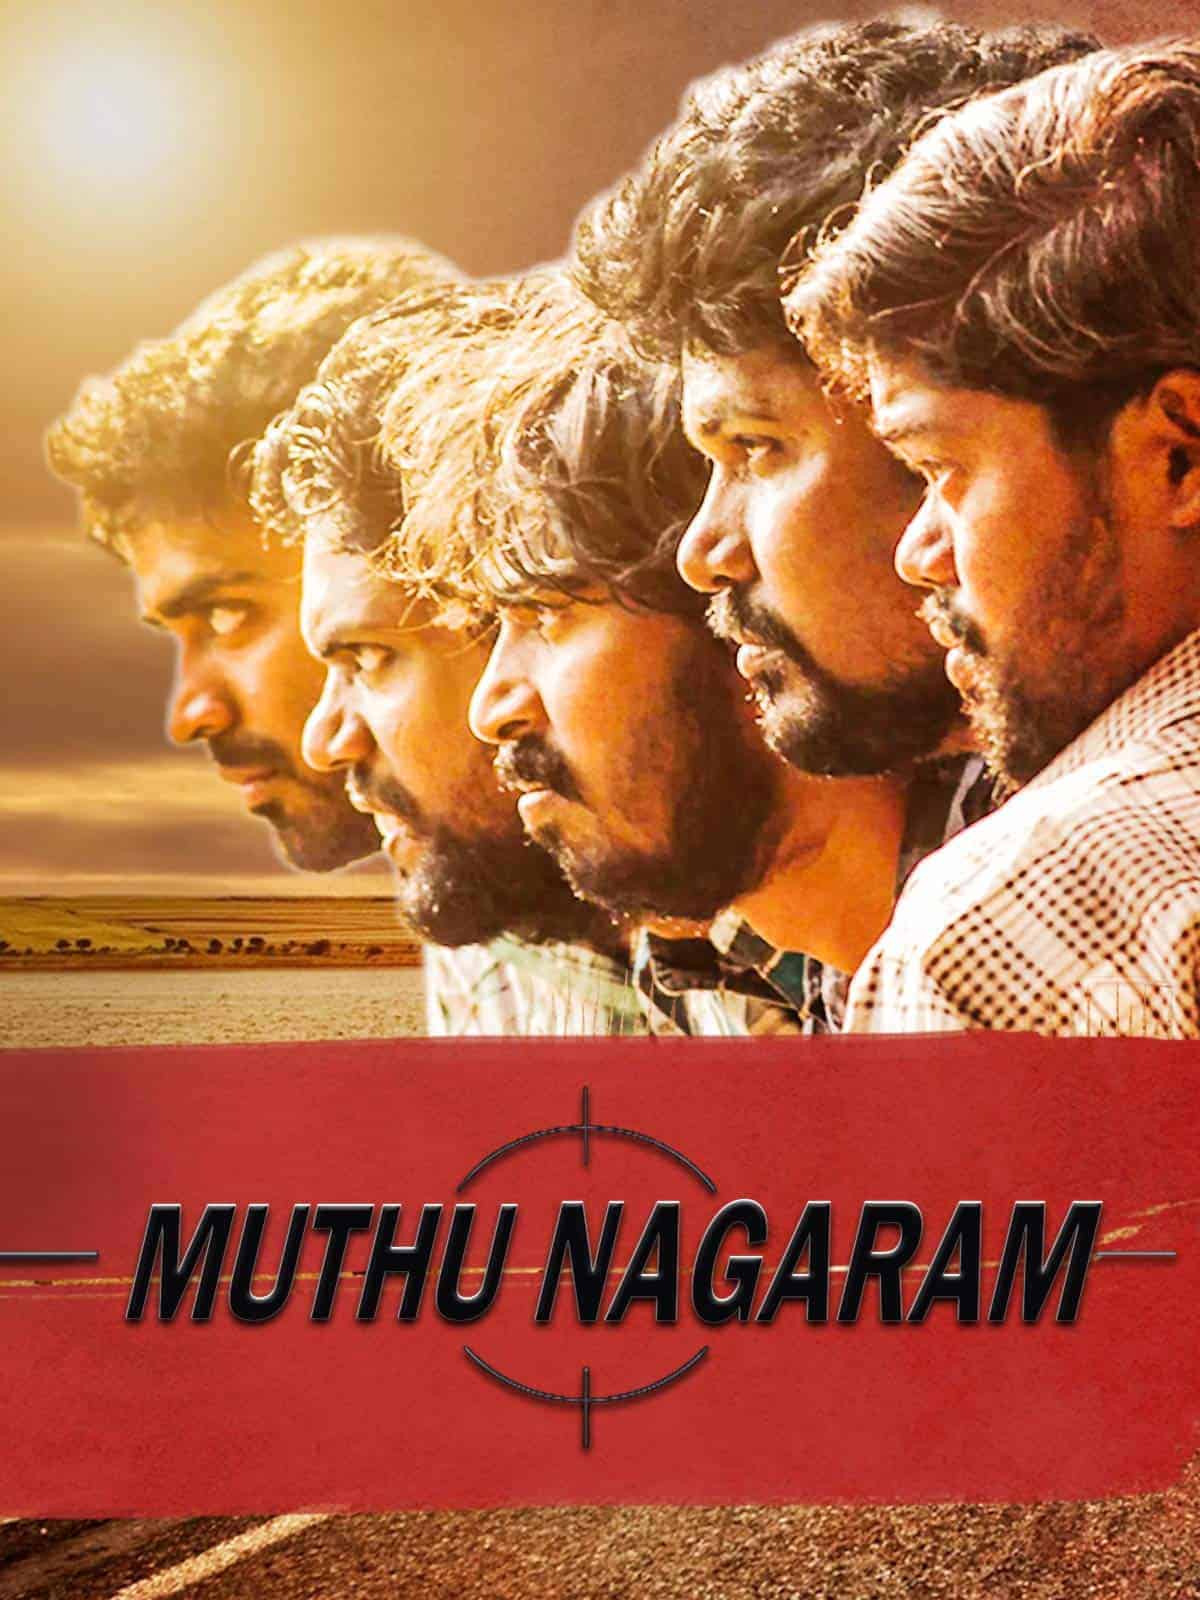 Muthu Nagaram 2013 Tamil Action Movie Online